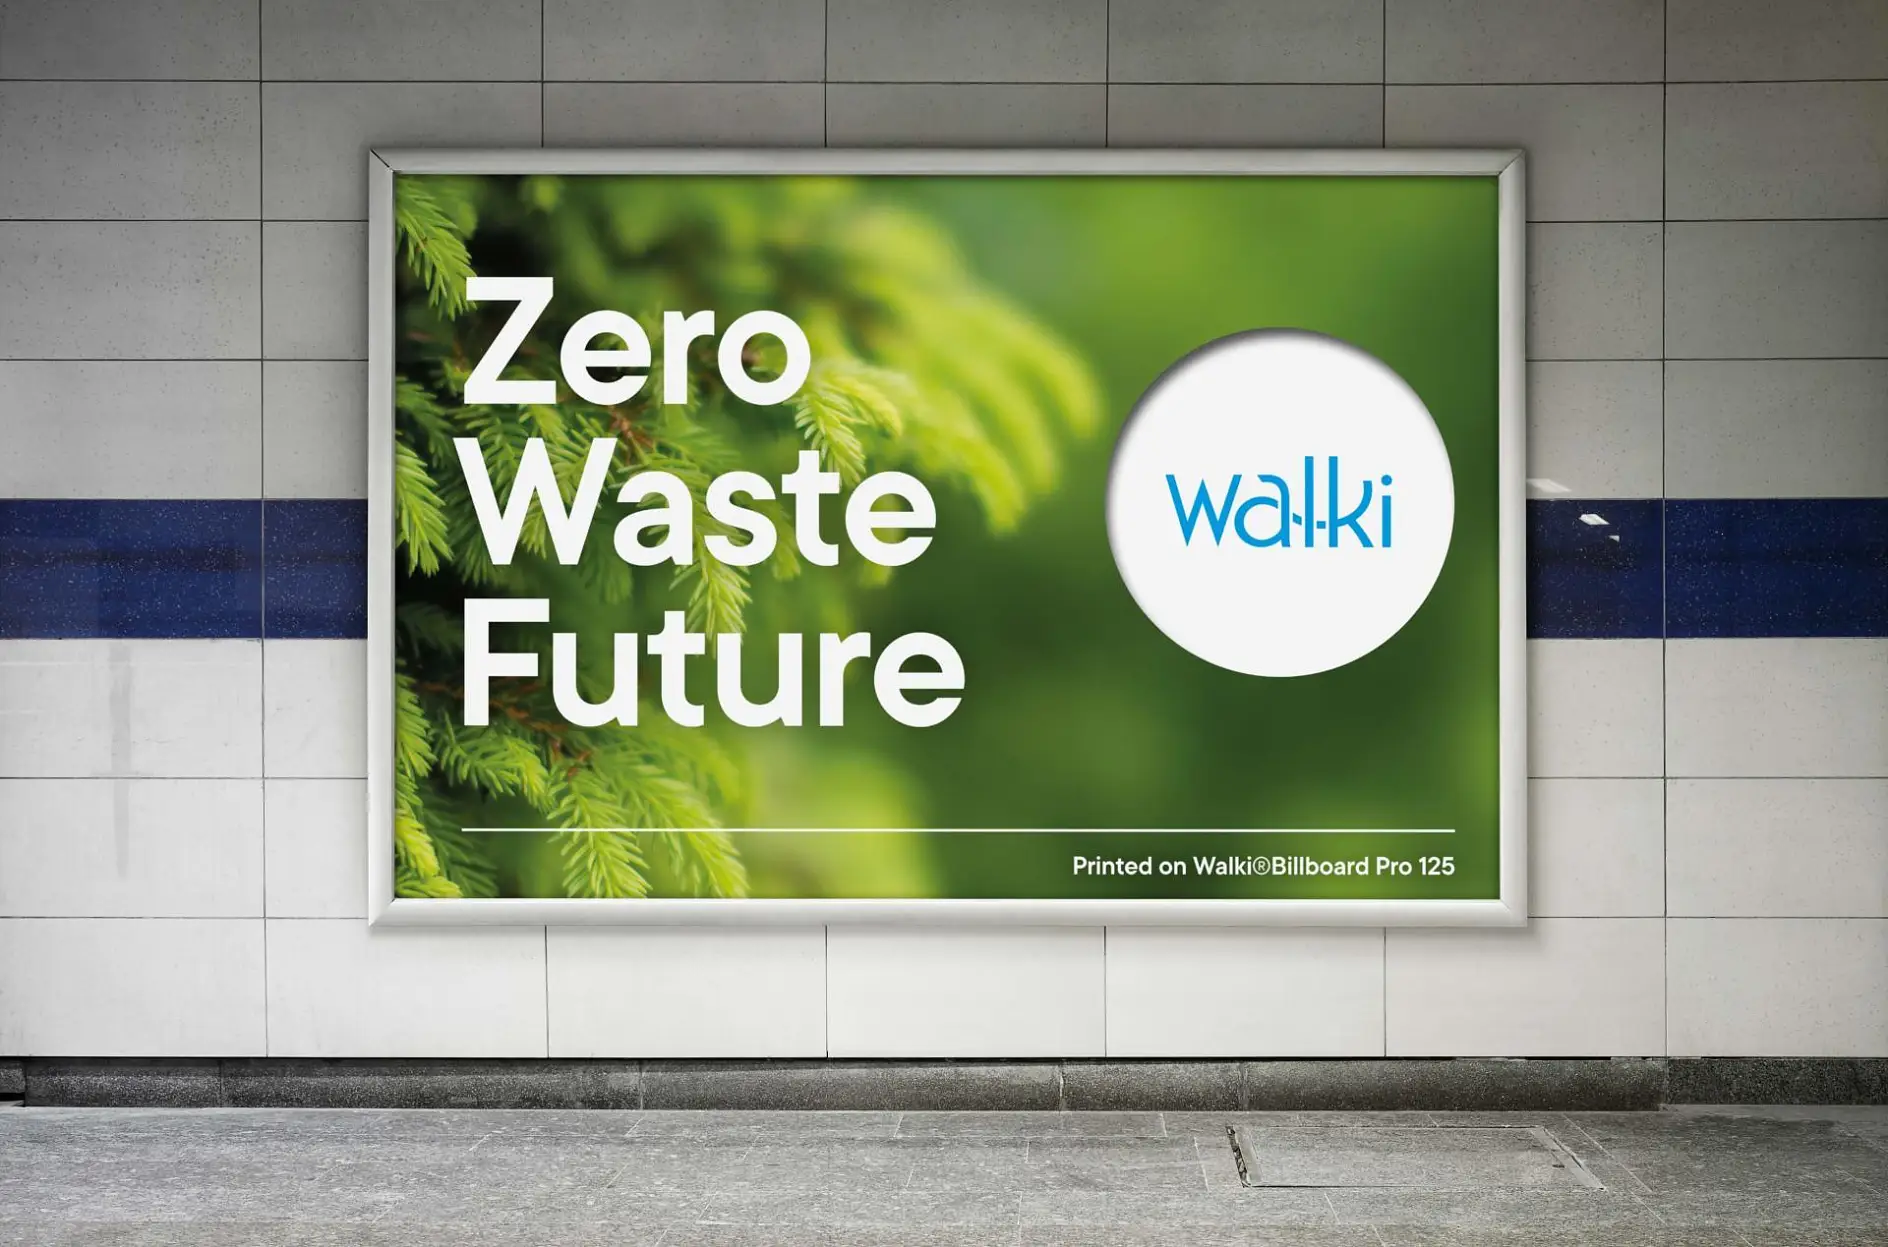 Walki zero waste future